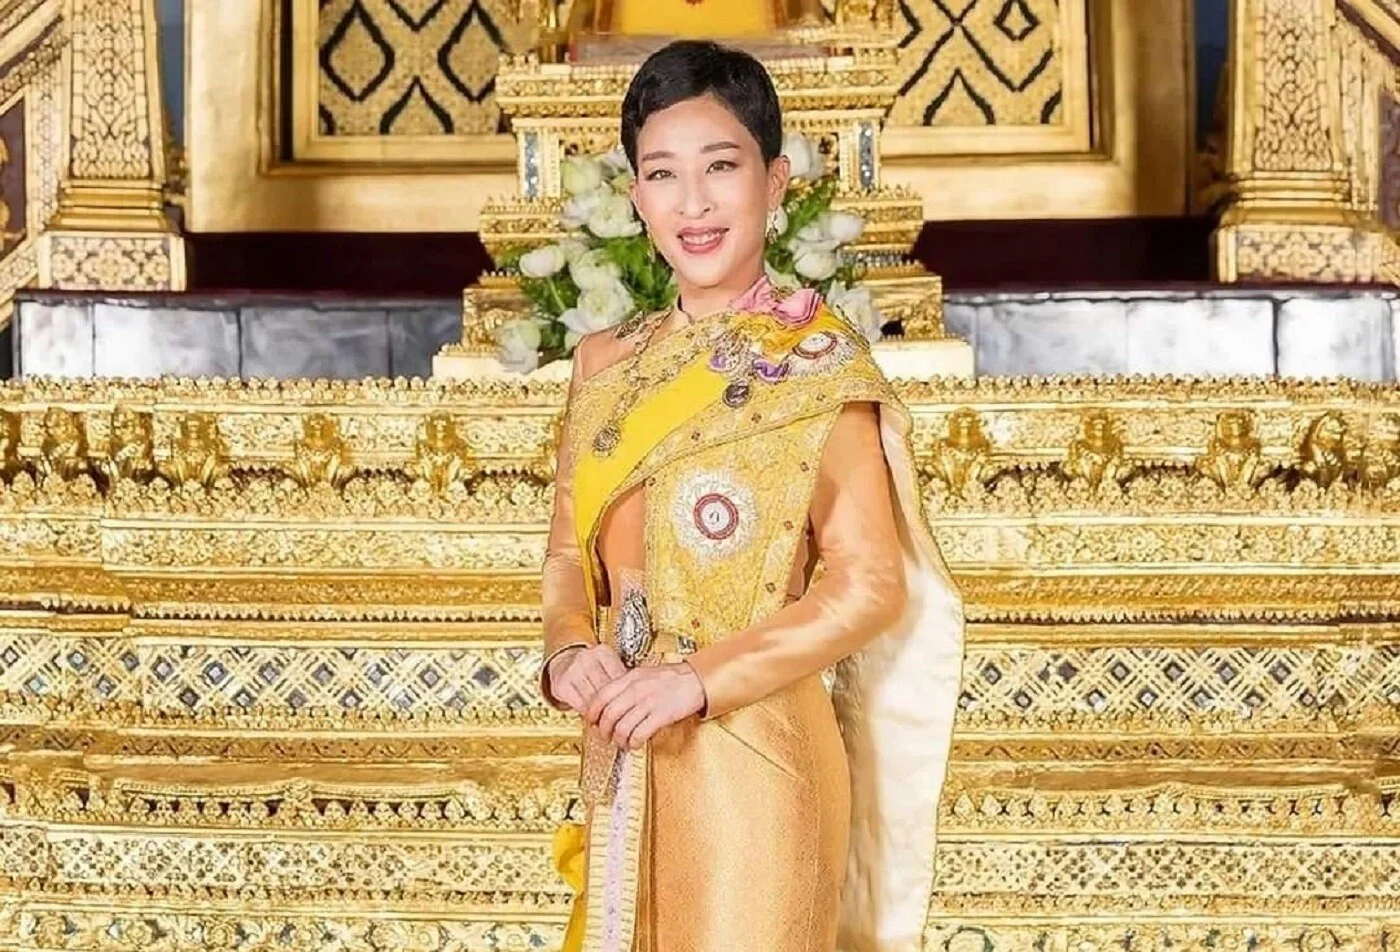 Πριγκίπισσα της Ταϊλάνδης: Παραμένει χωρίς τις αισθήσεις της εβδομάδες αφού κατέρρευσε